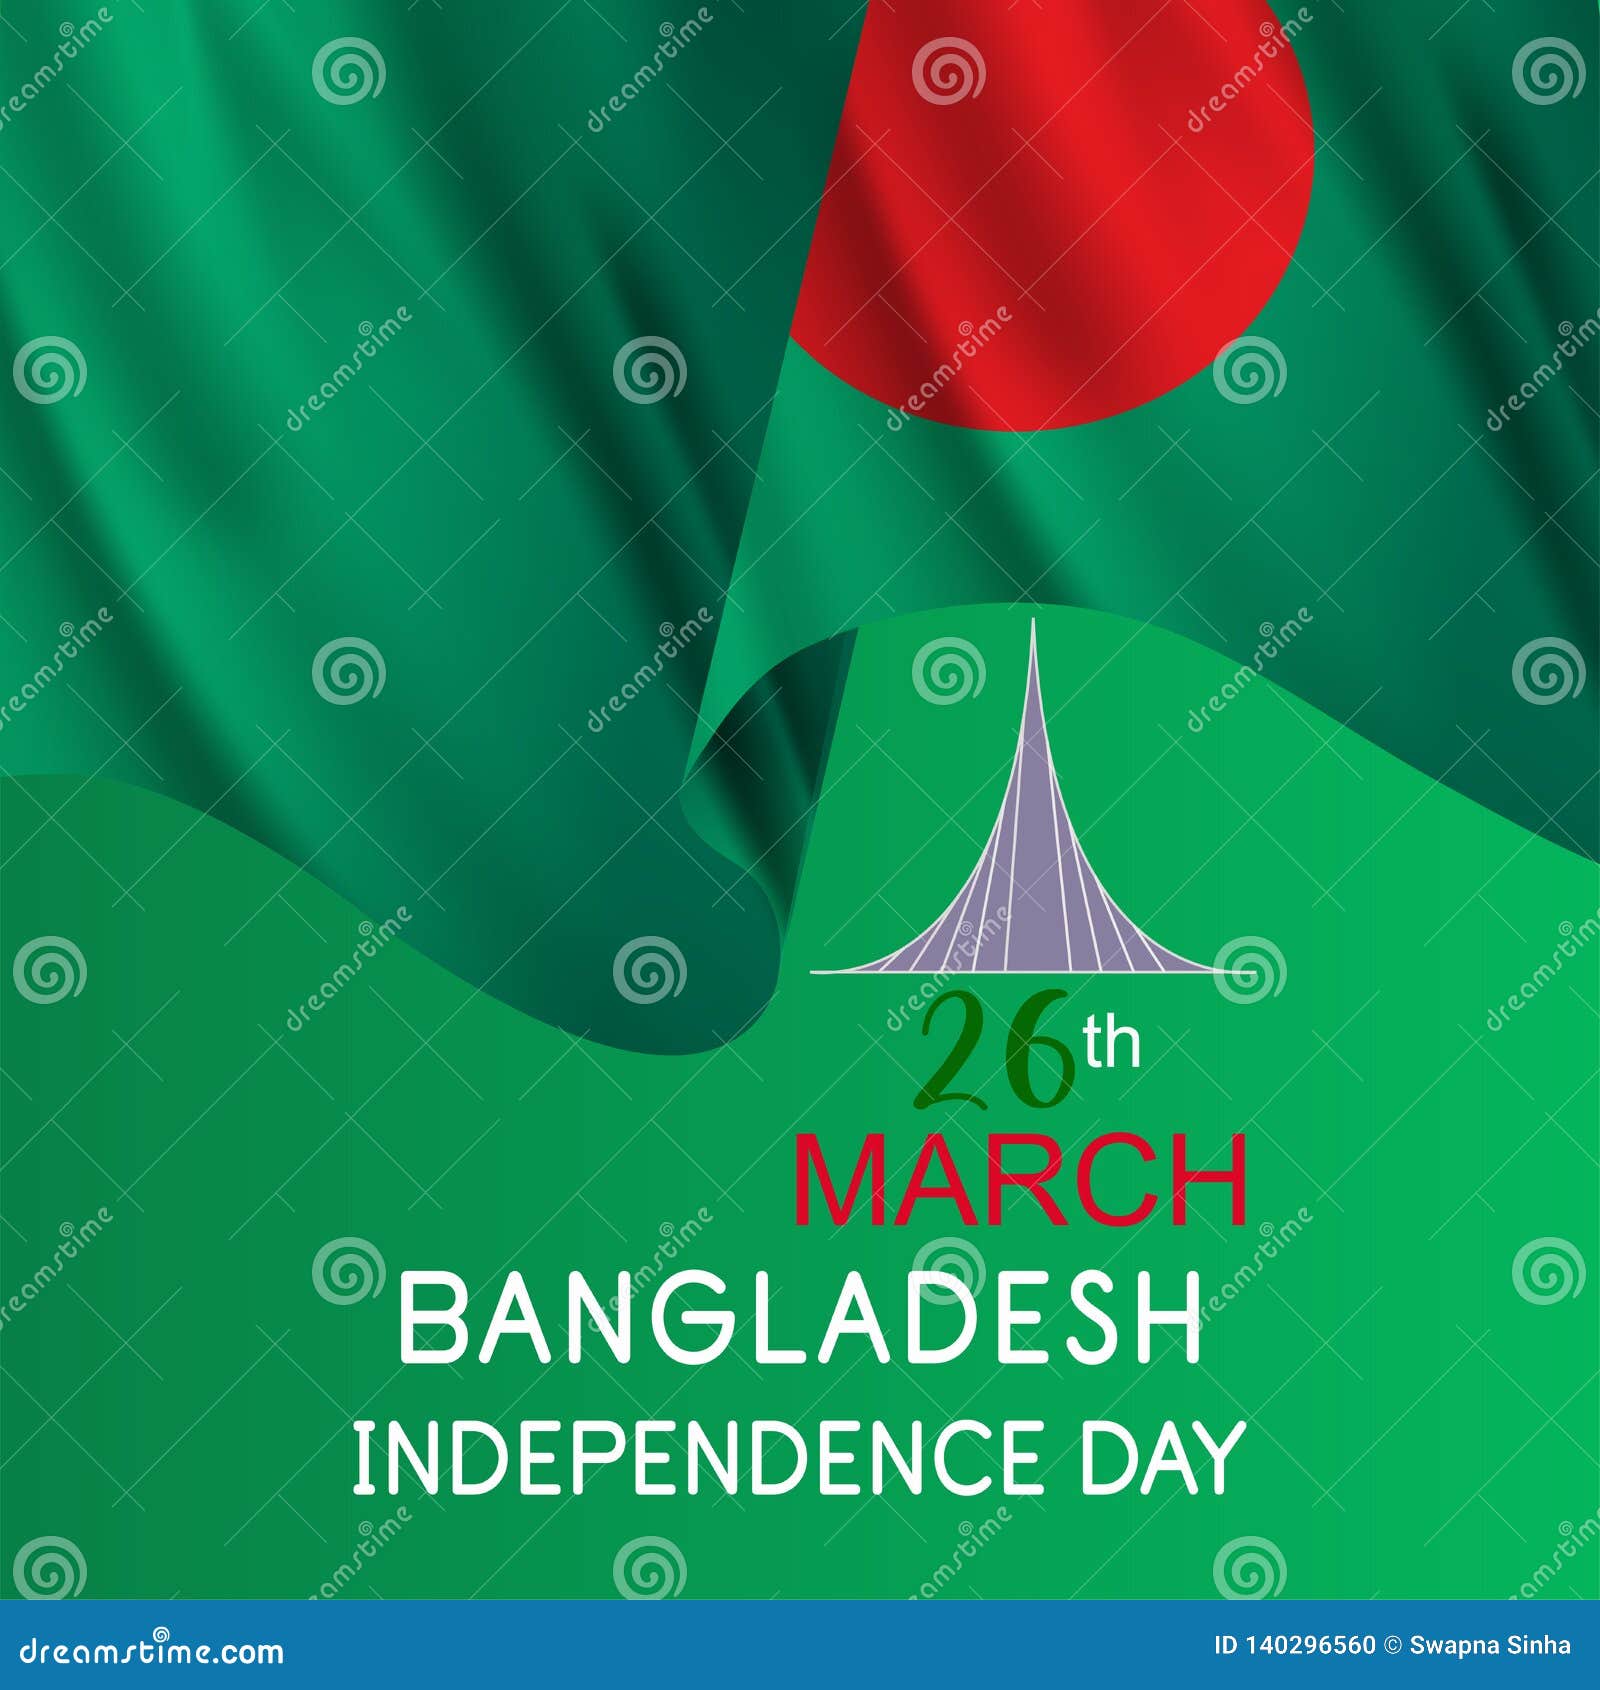 Ngày Quốc khánh là ngày lễ quan trọng của mọi quốc gia, bao gồm cả Bangladesh. Nếu bạn muốn tìm kiếm những bức tranh minh họa đầy ý nghĩa về ngày lễ này, hãy xem hình ảnh liên quan để tận hưởng không khí lễ hội. 